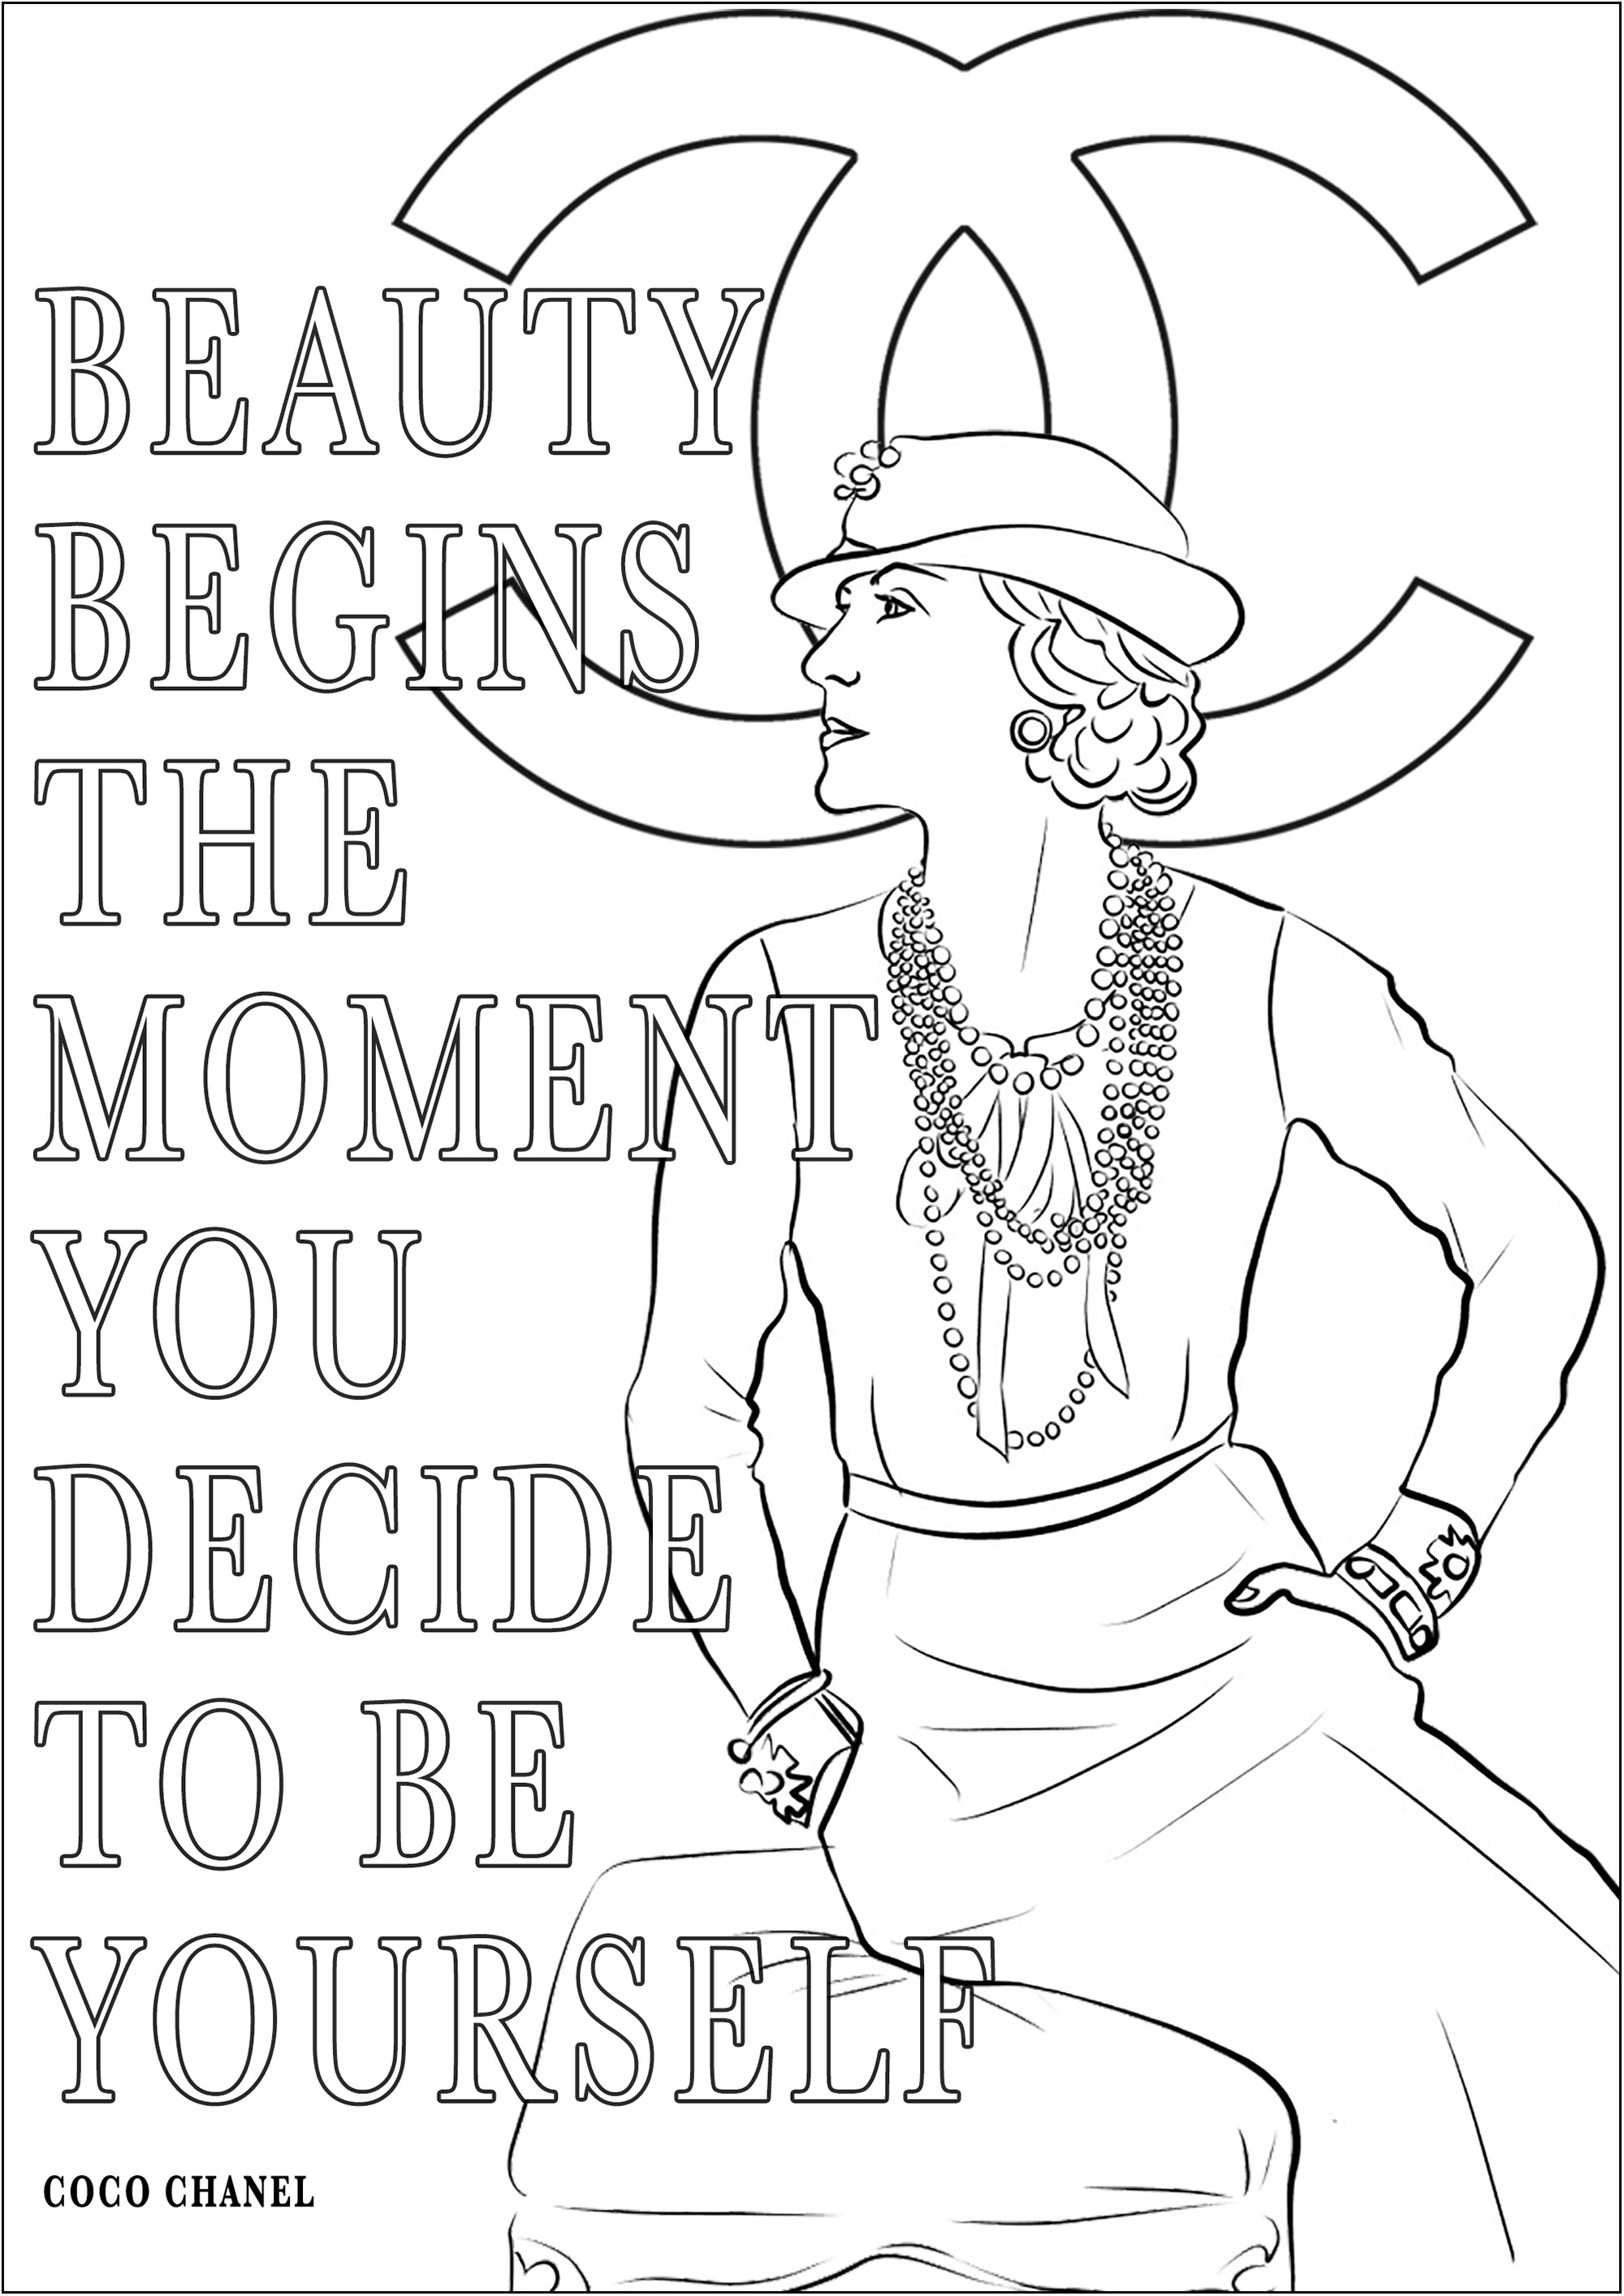 Coco Chanel et sa citation 'Beauty begins the moment you decide to be yourself'. Cela signifie 'La beauté commence au moment où vous décidez d'être vous-même'.Coco Chanel, née en 1883, était une créatrice de mode française révolutionnaire qui a transformé l'industrie avec ses créations intemporelles, telles que le célèbre tailleur Chanel et la petite robe noire.